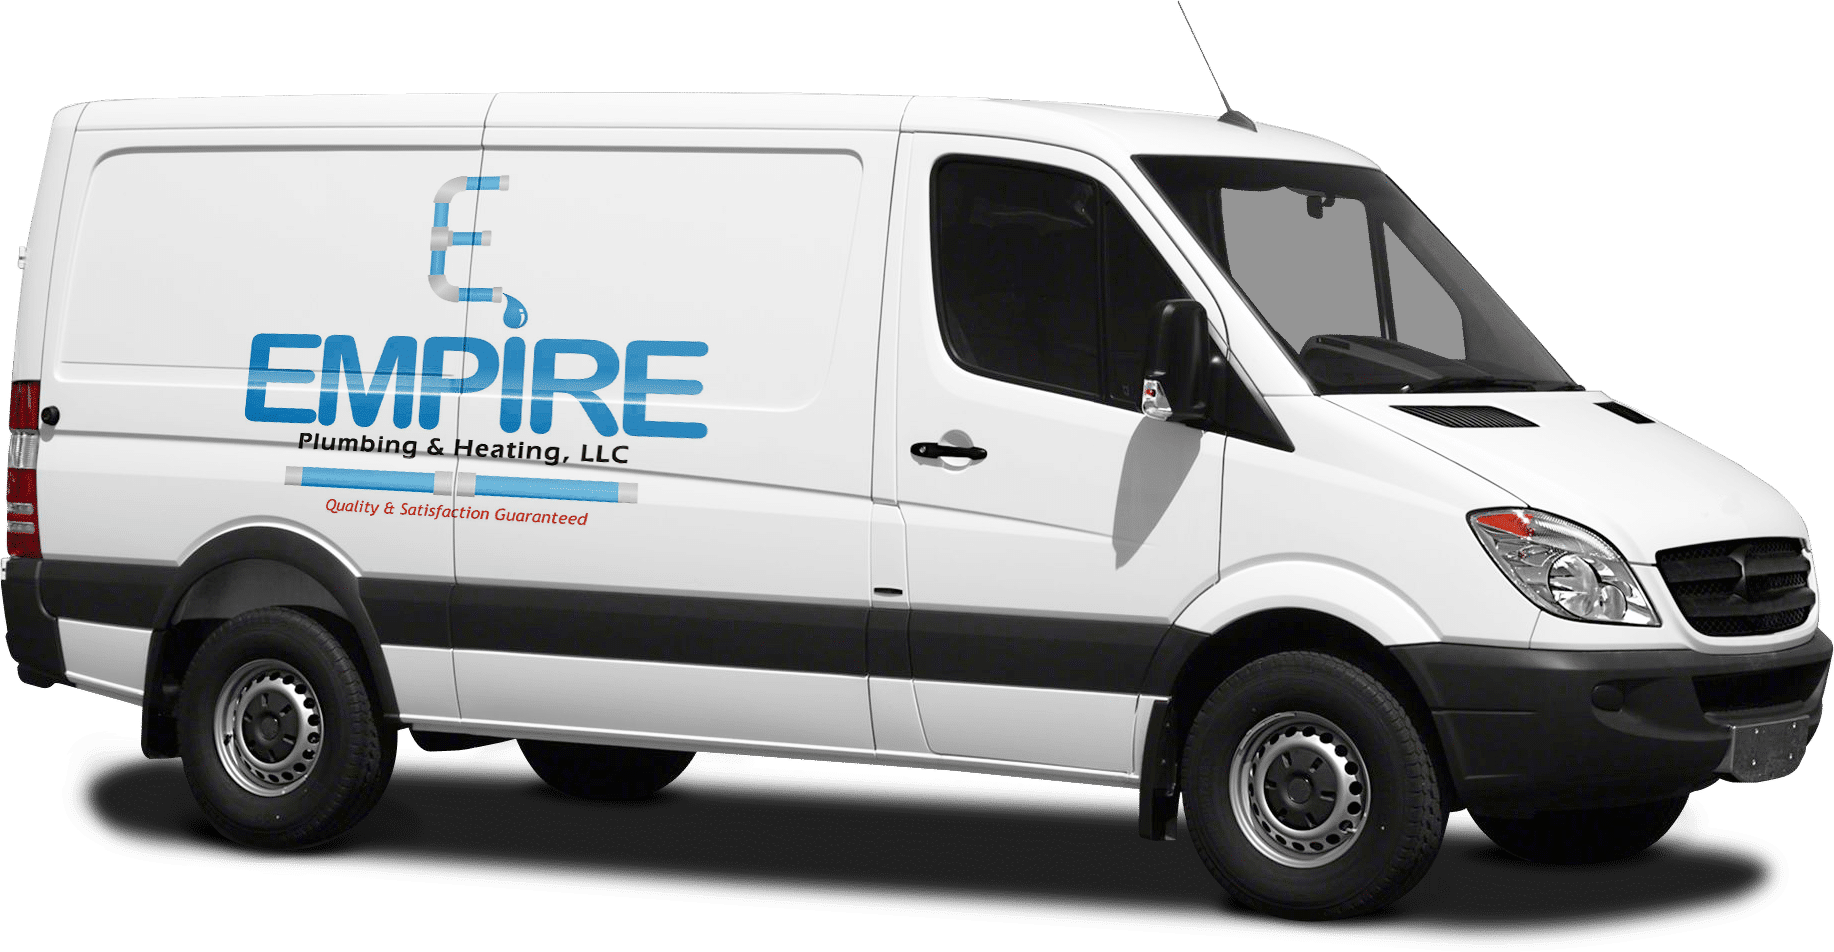 Empire Plumbing & Heating Van